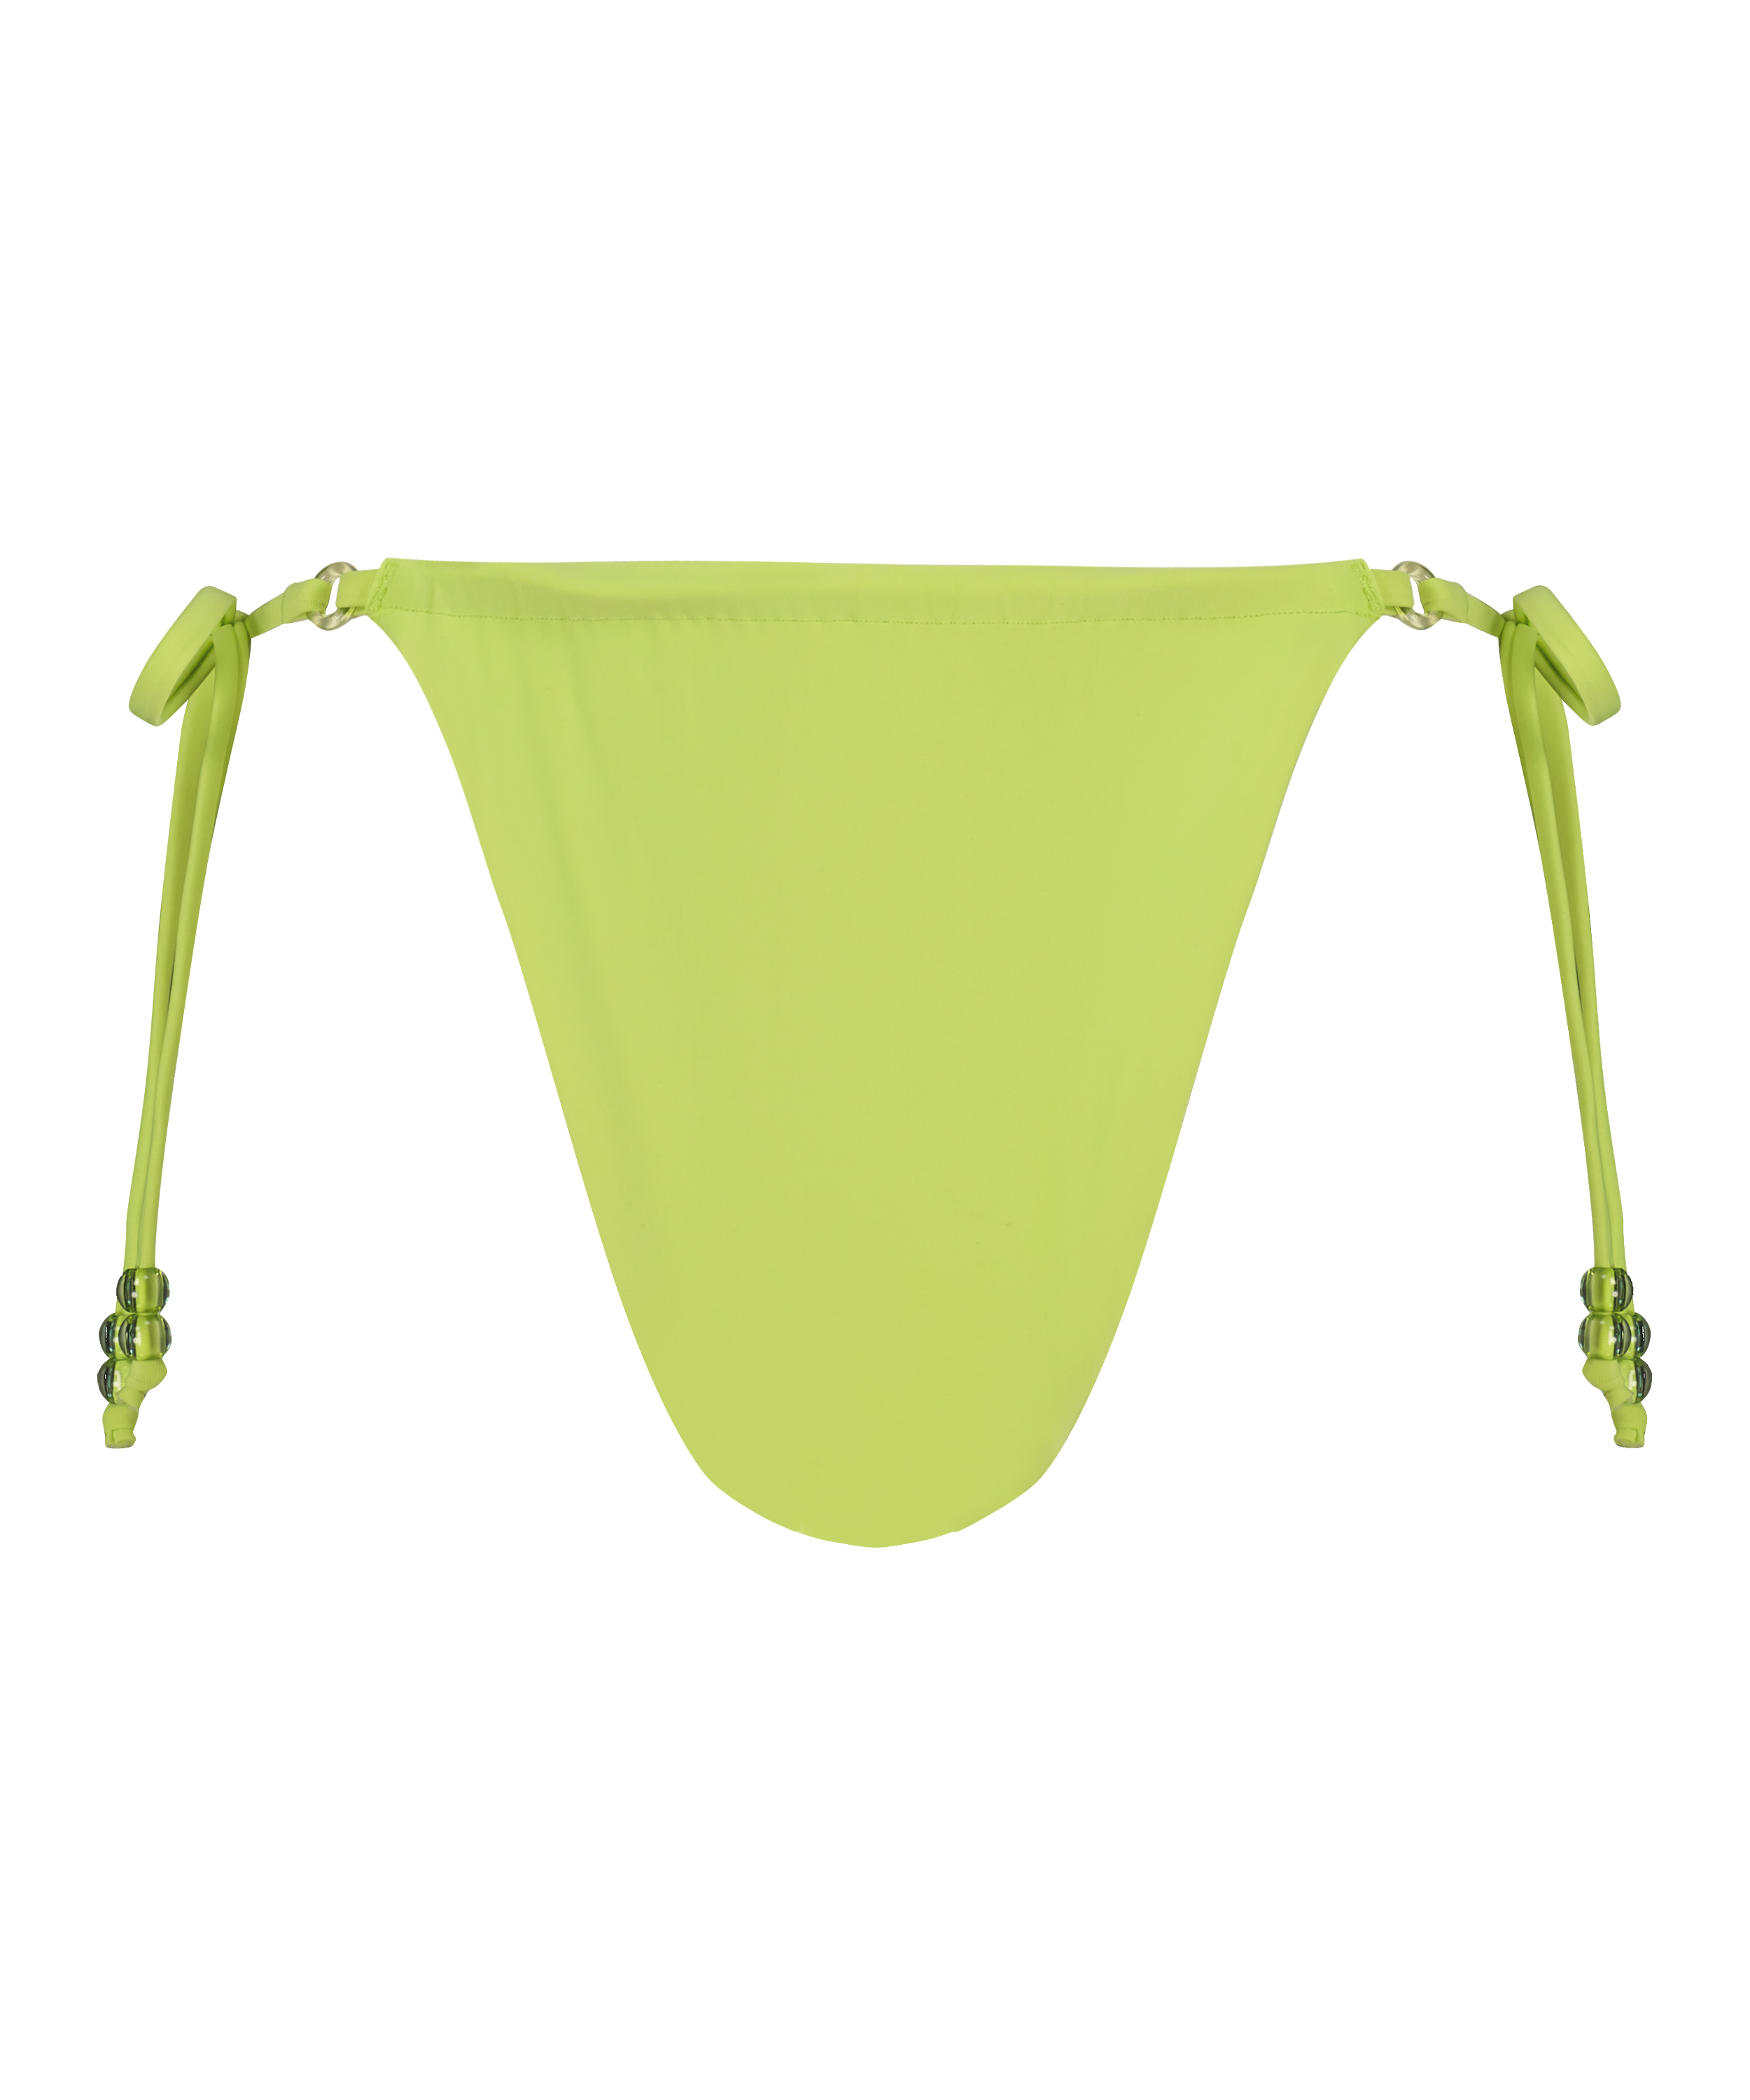 Bikiniunterteil mit hohem Beinausschnitt Wild, grün, main